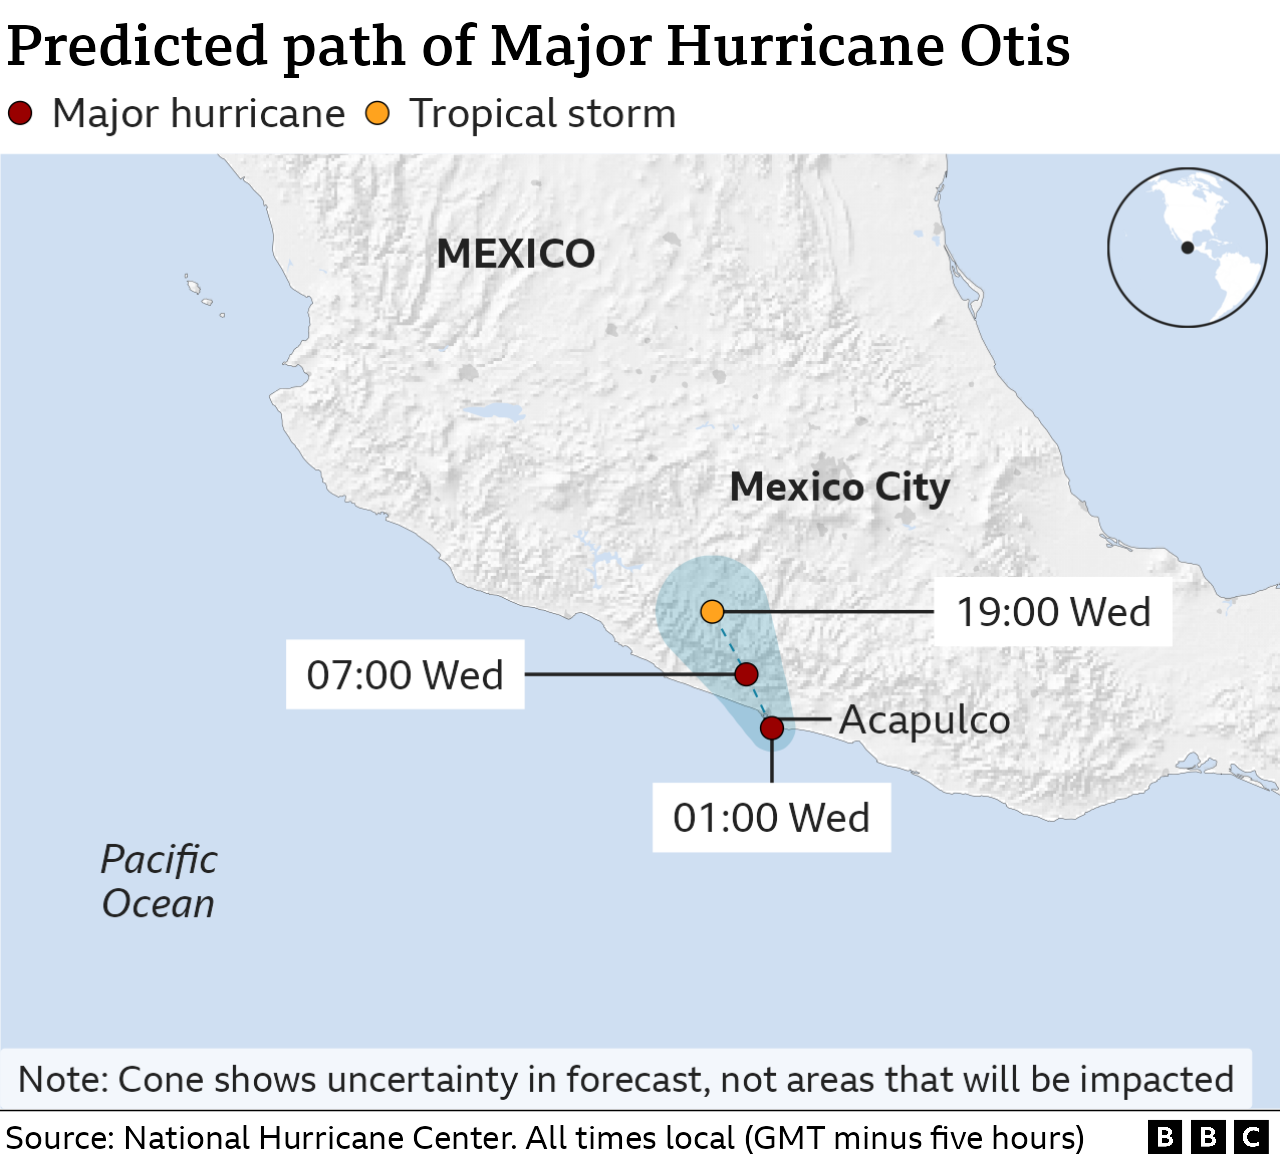 The trajectory of Hurricane Otis